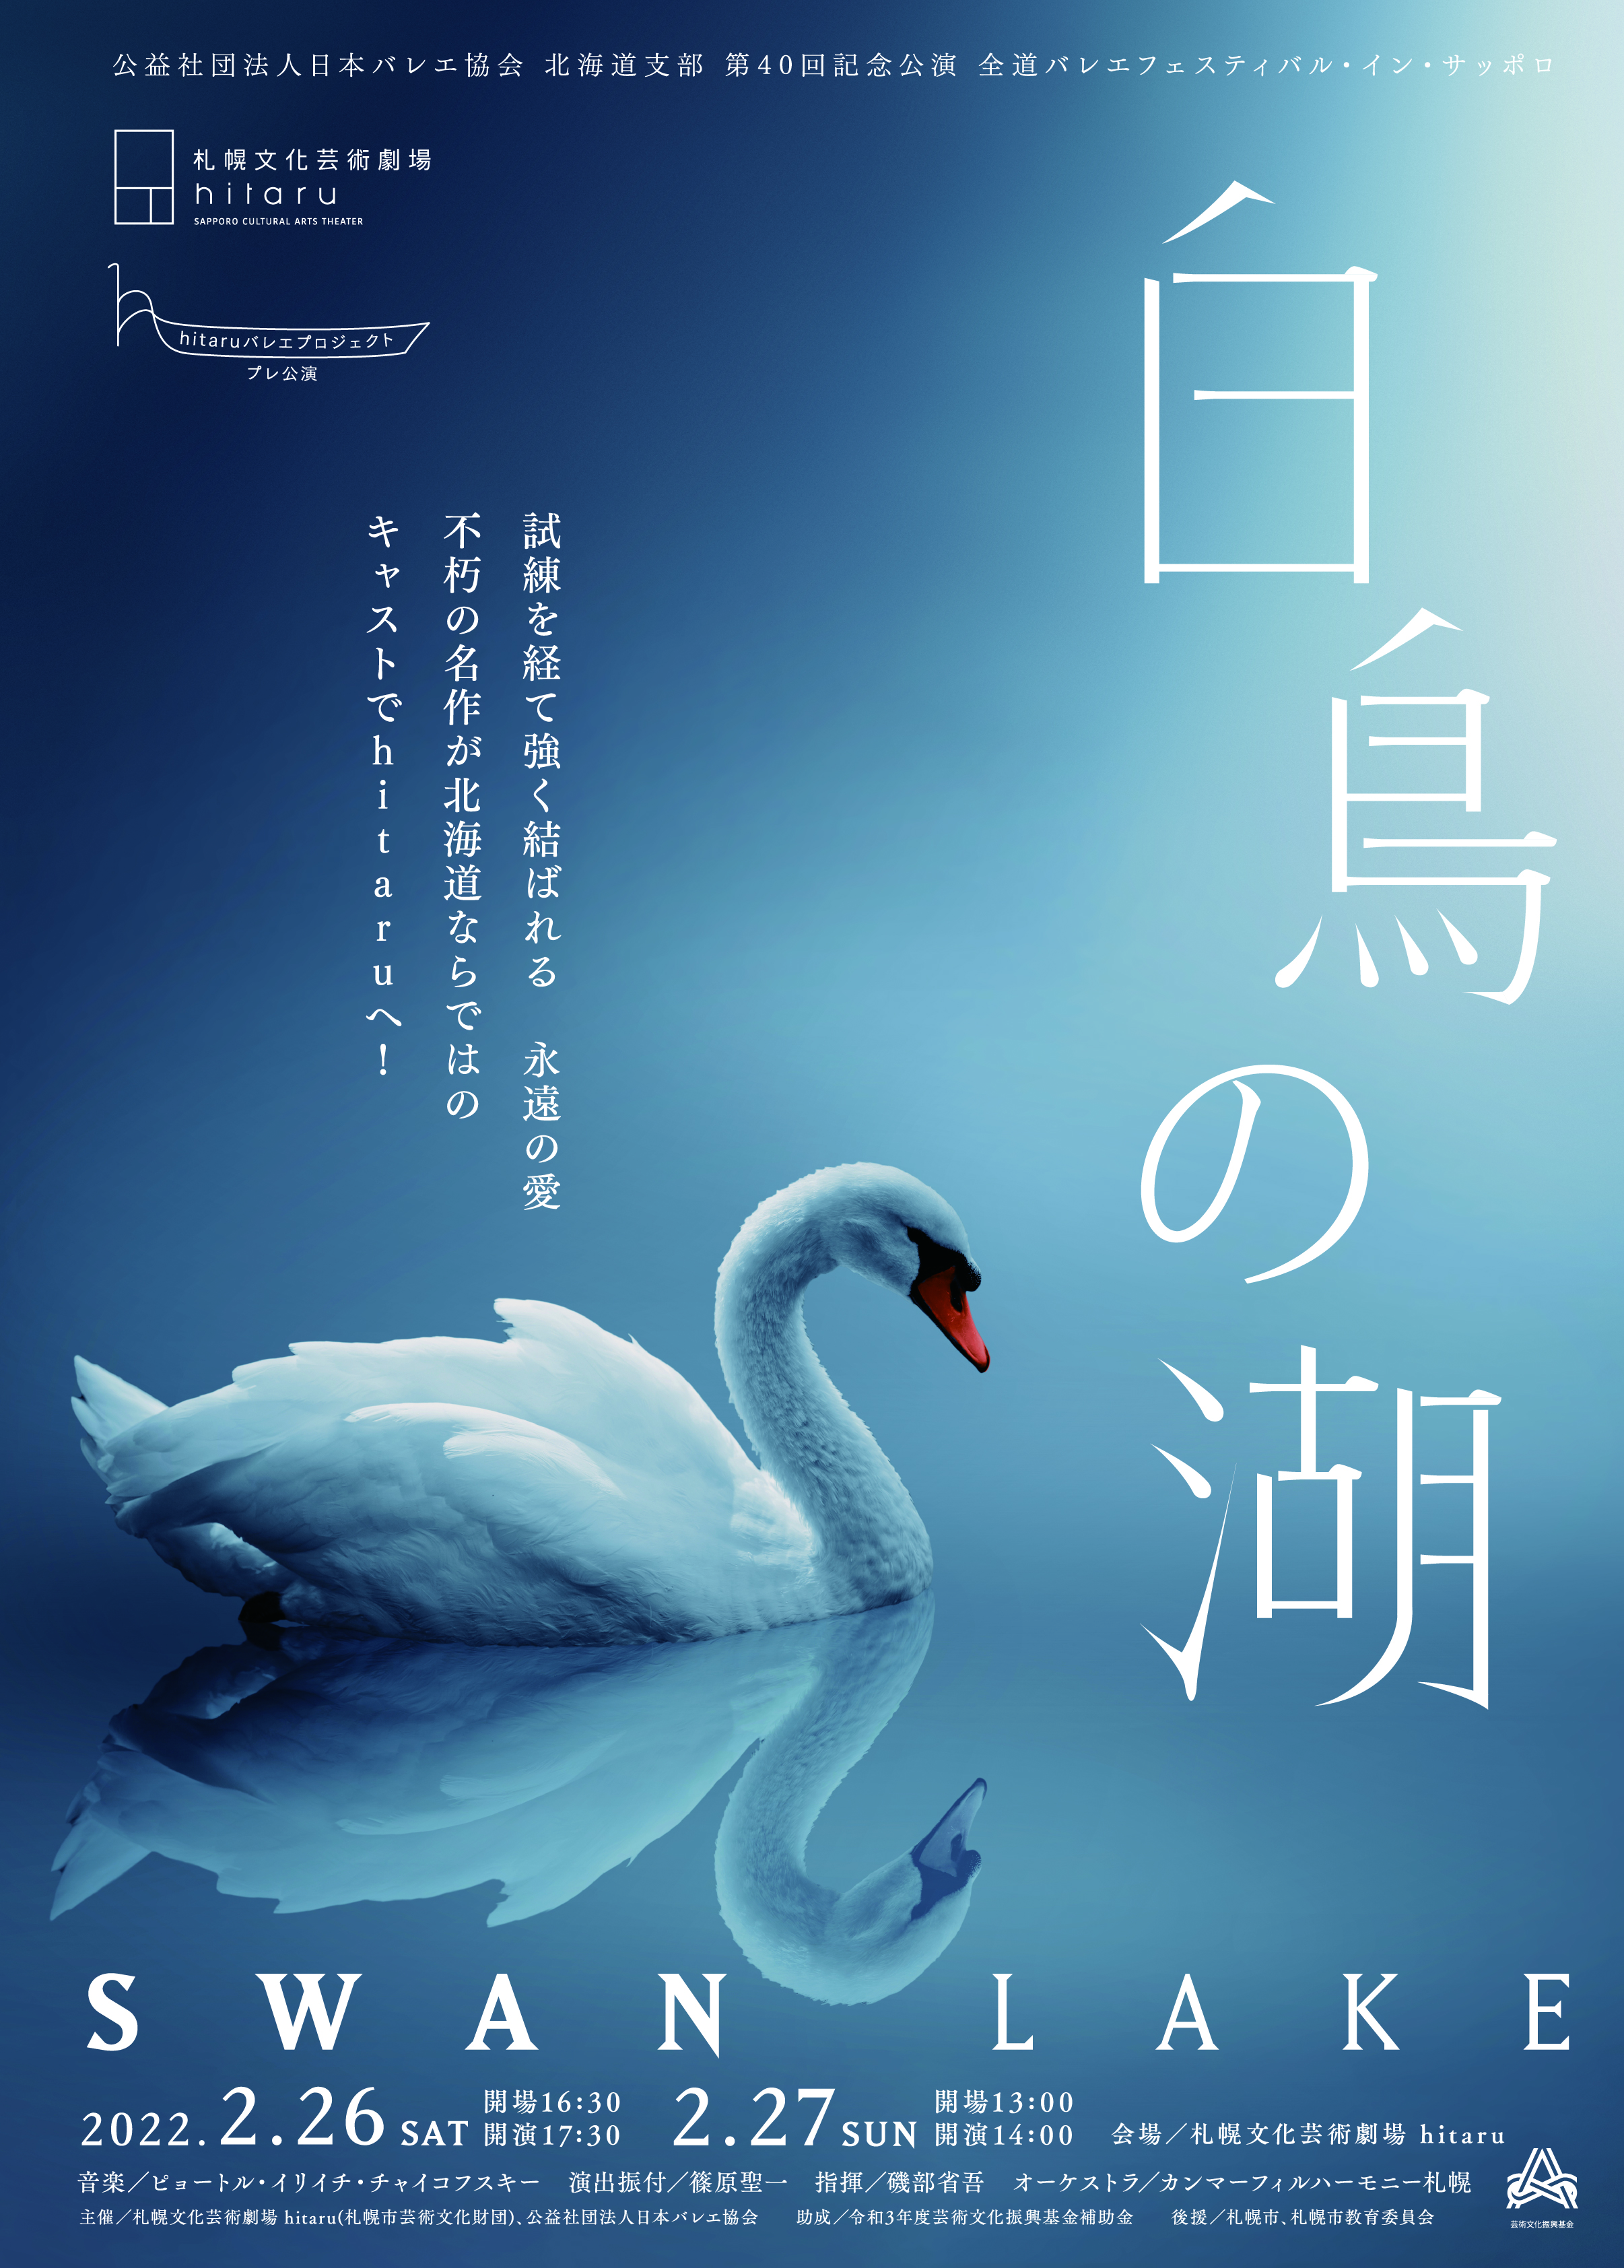 hitaruバレエプロジェクト プレ公演「白鳥の湖」 公益社団法人日本バレエ協会 北海道支部 第40回記念公演  全道バレエフェスティバル・イン・サッポロのイメージ